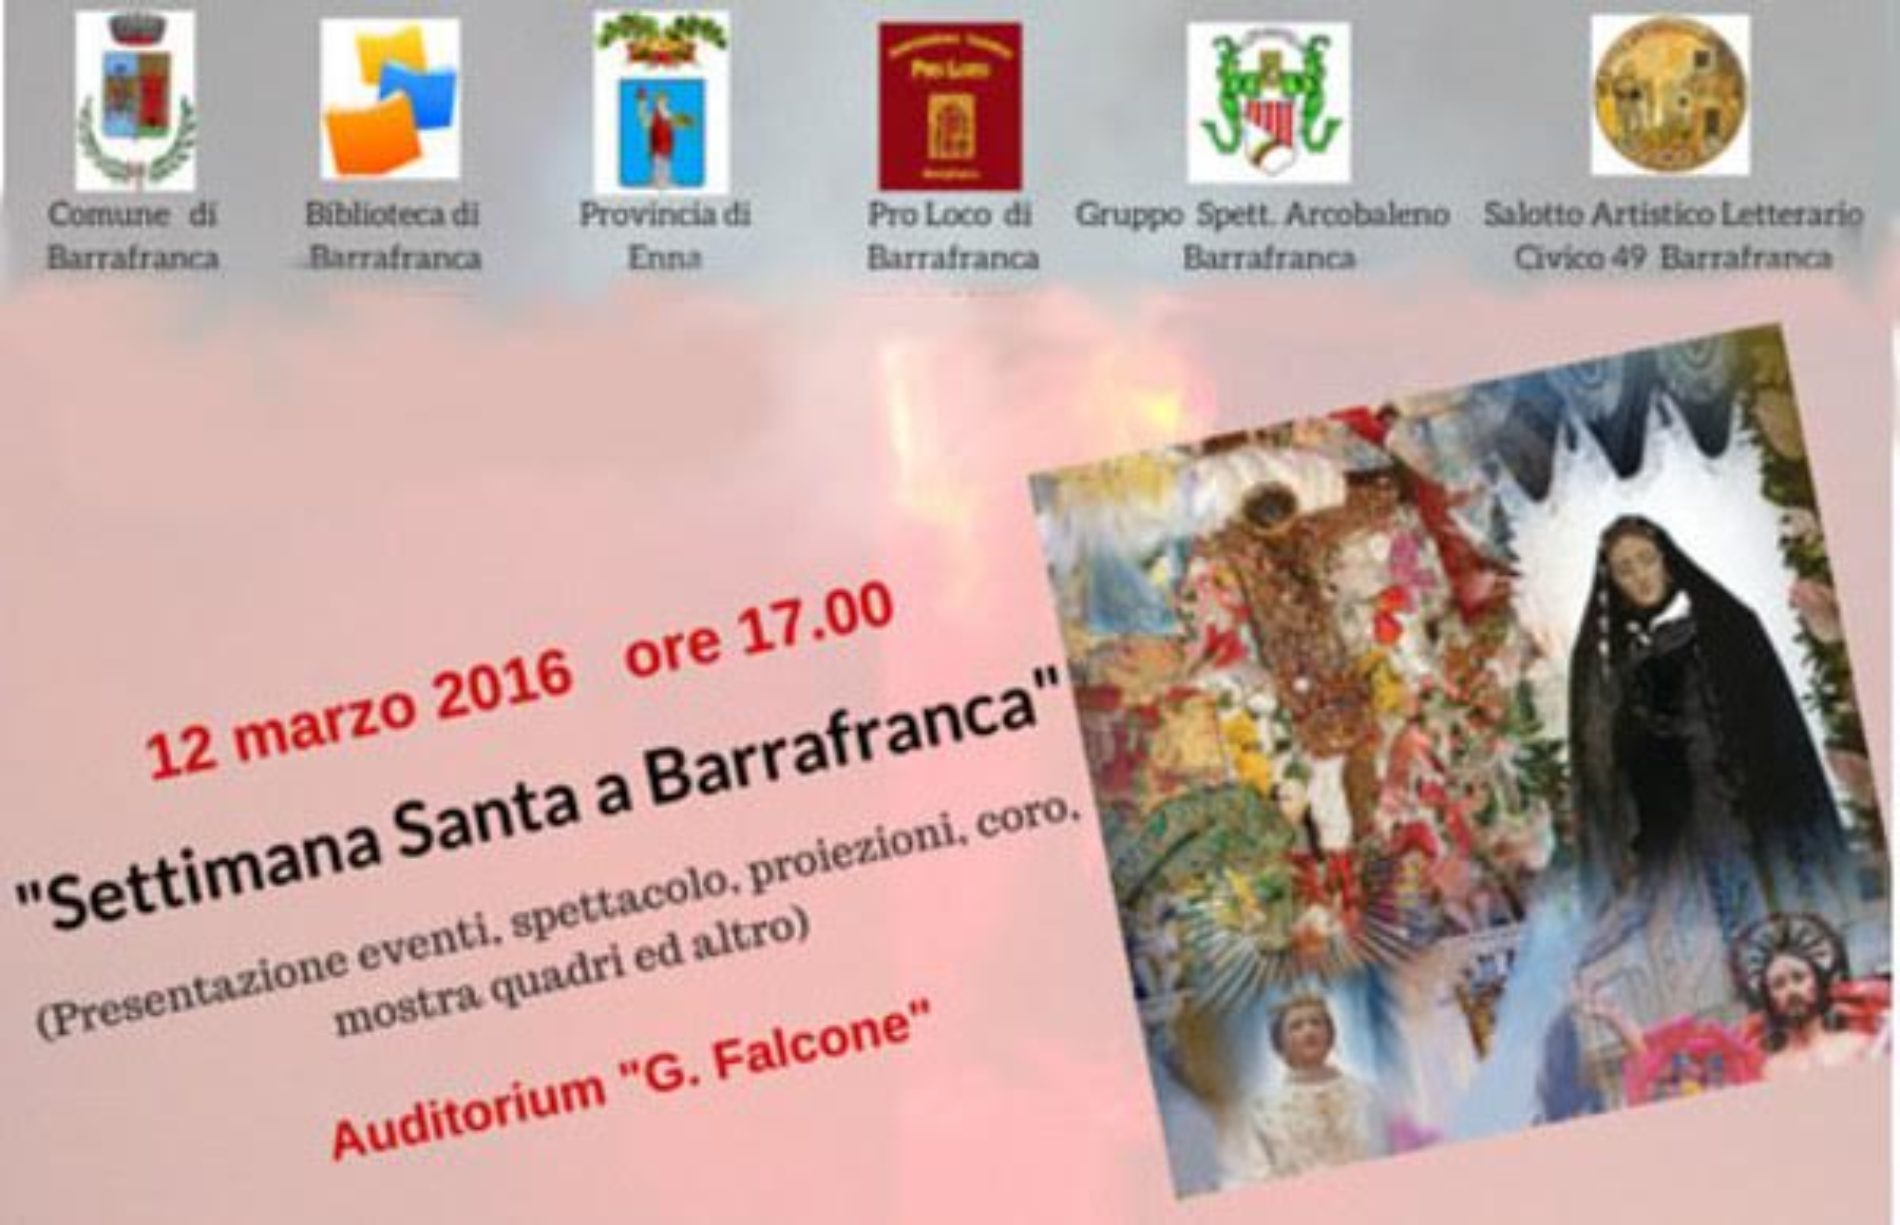 L’evento “La Settimana Santa a Barrafranca” organizzato dal III Settore Servizi alla Persona- Biblioteca Comunale Barrafranca